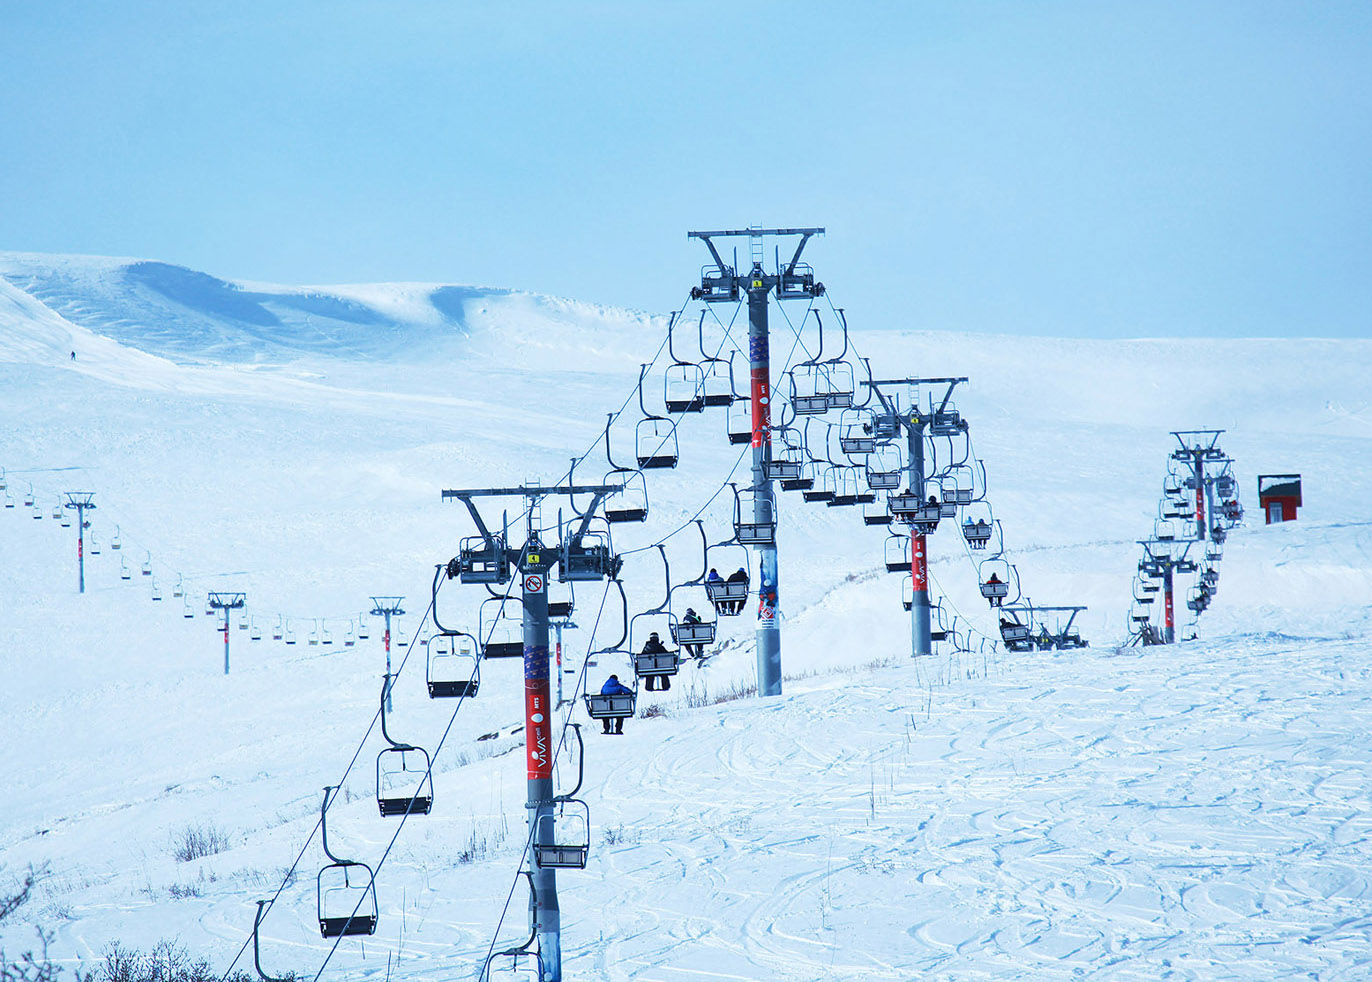 Ermenistan'ın Tsakhadzor kenti Rus turistlerin seçtiği “En iyi kayak merkezleri” listesinde